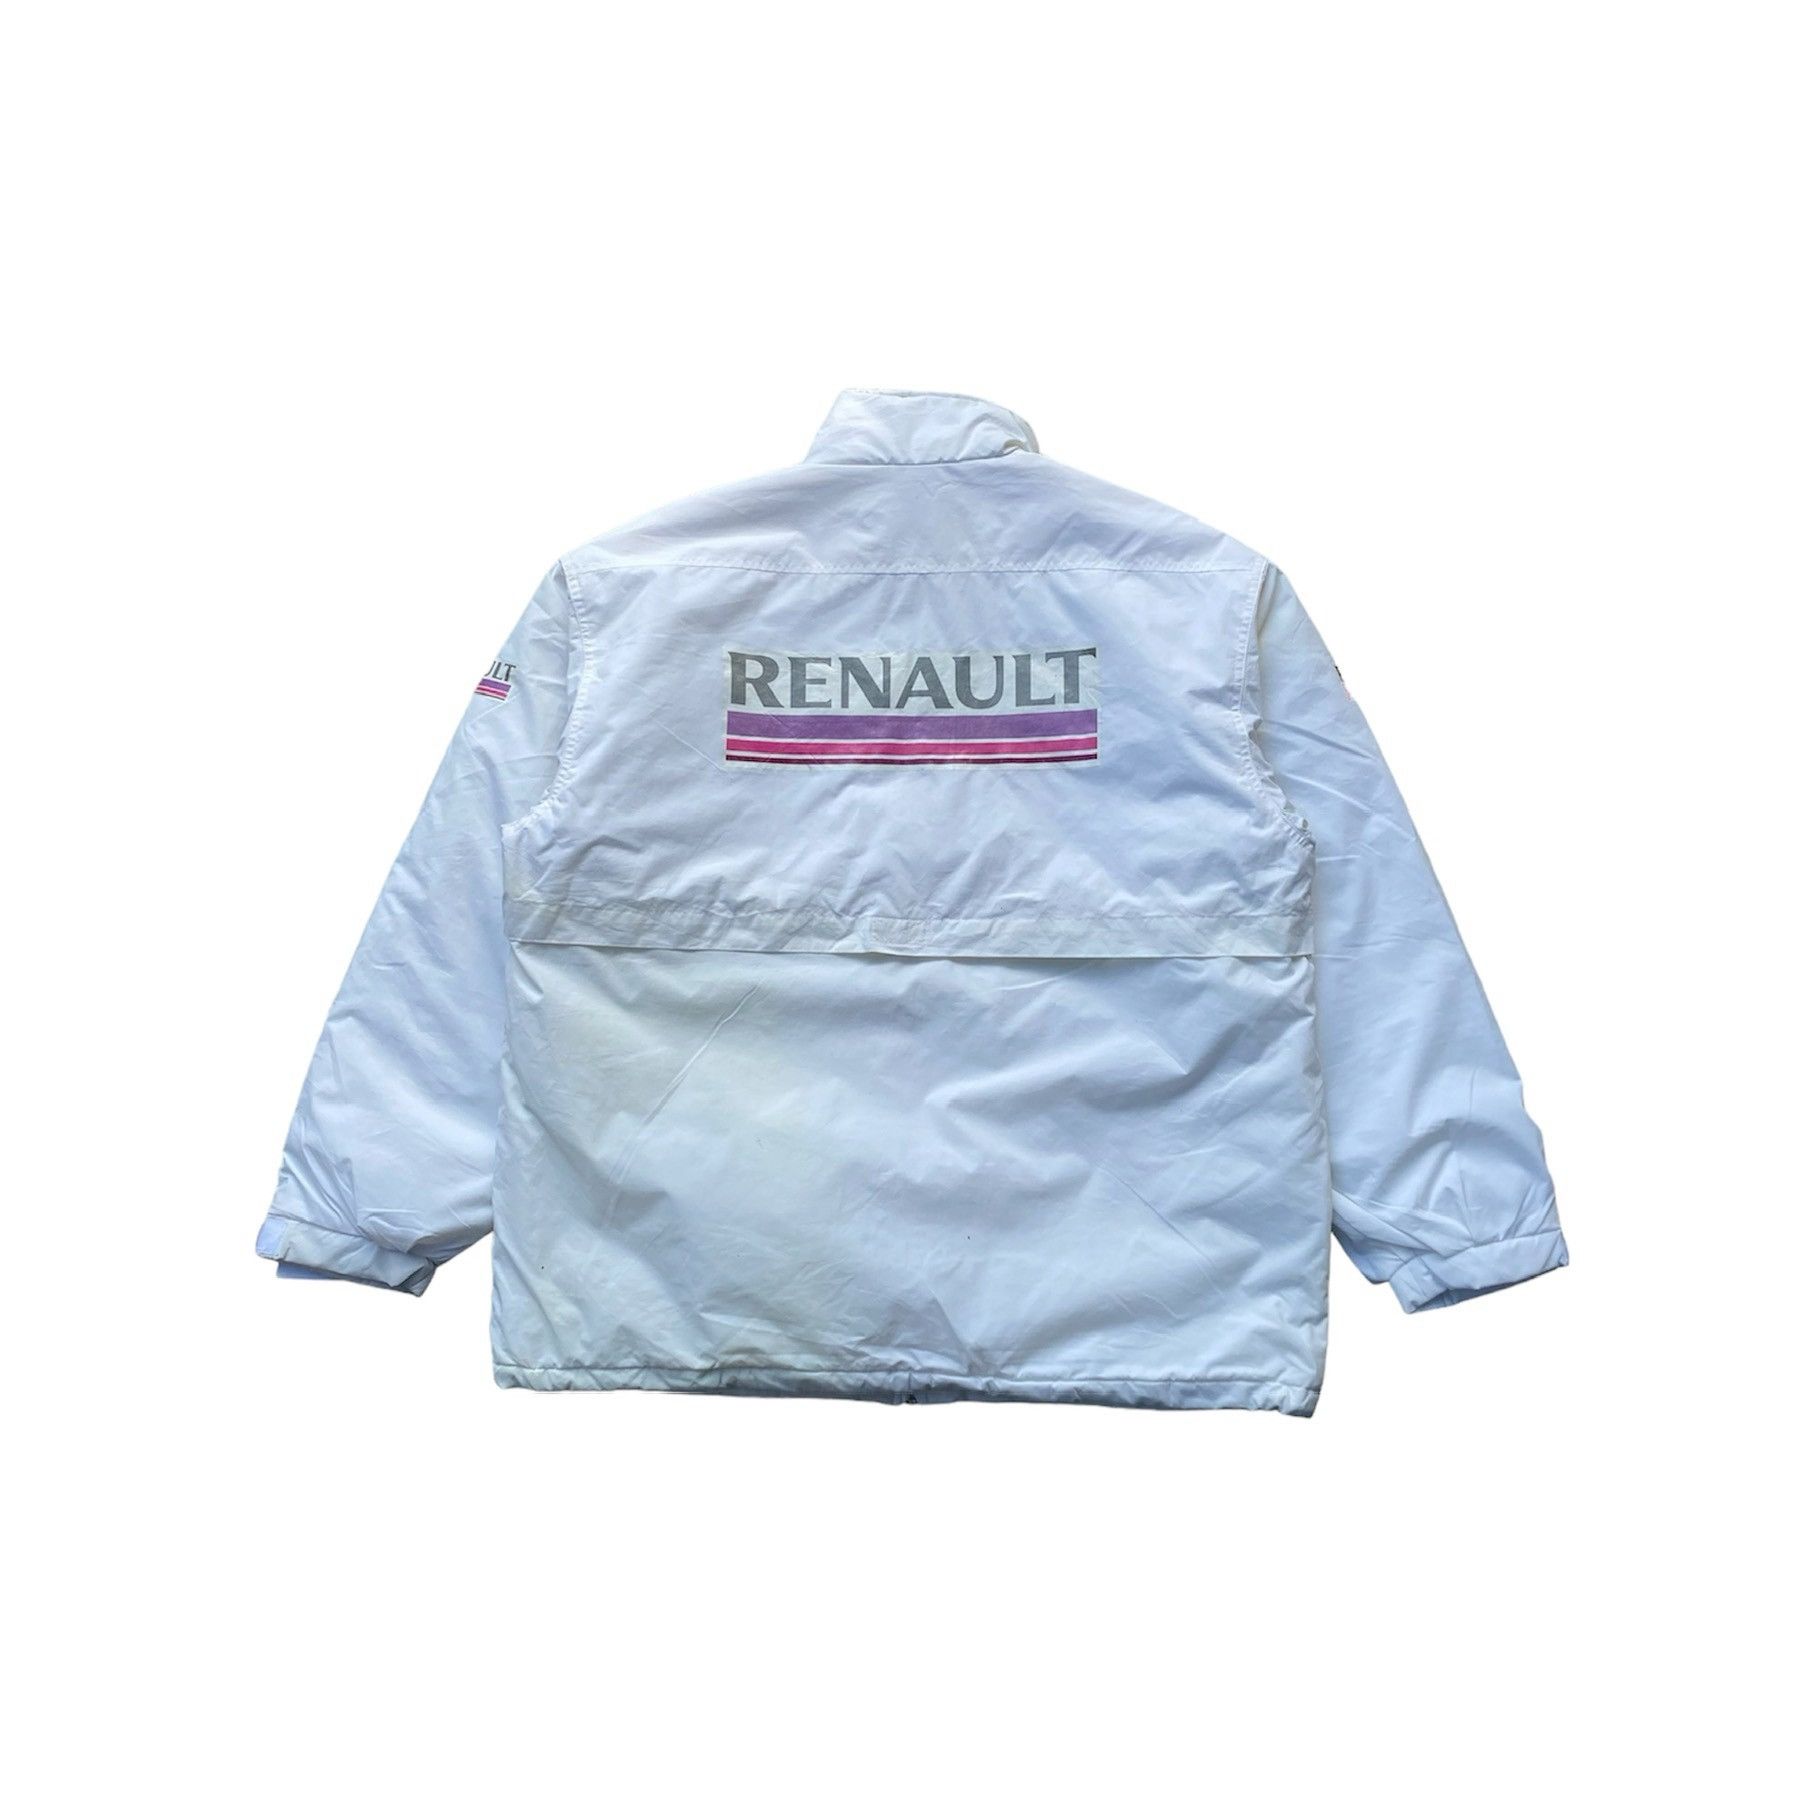 Vintage Vintage Renualt Racing Jacket | Grailed